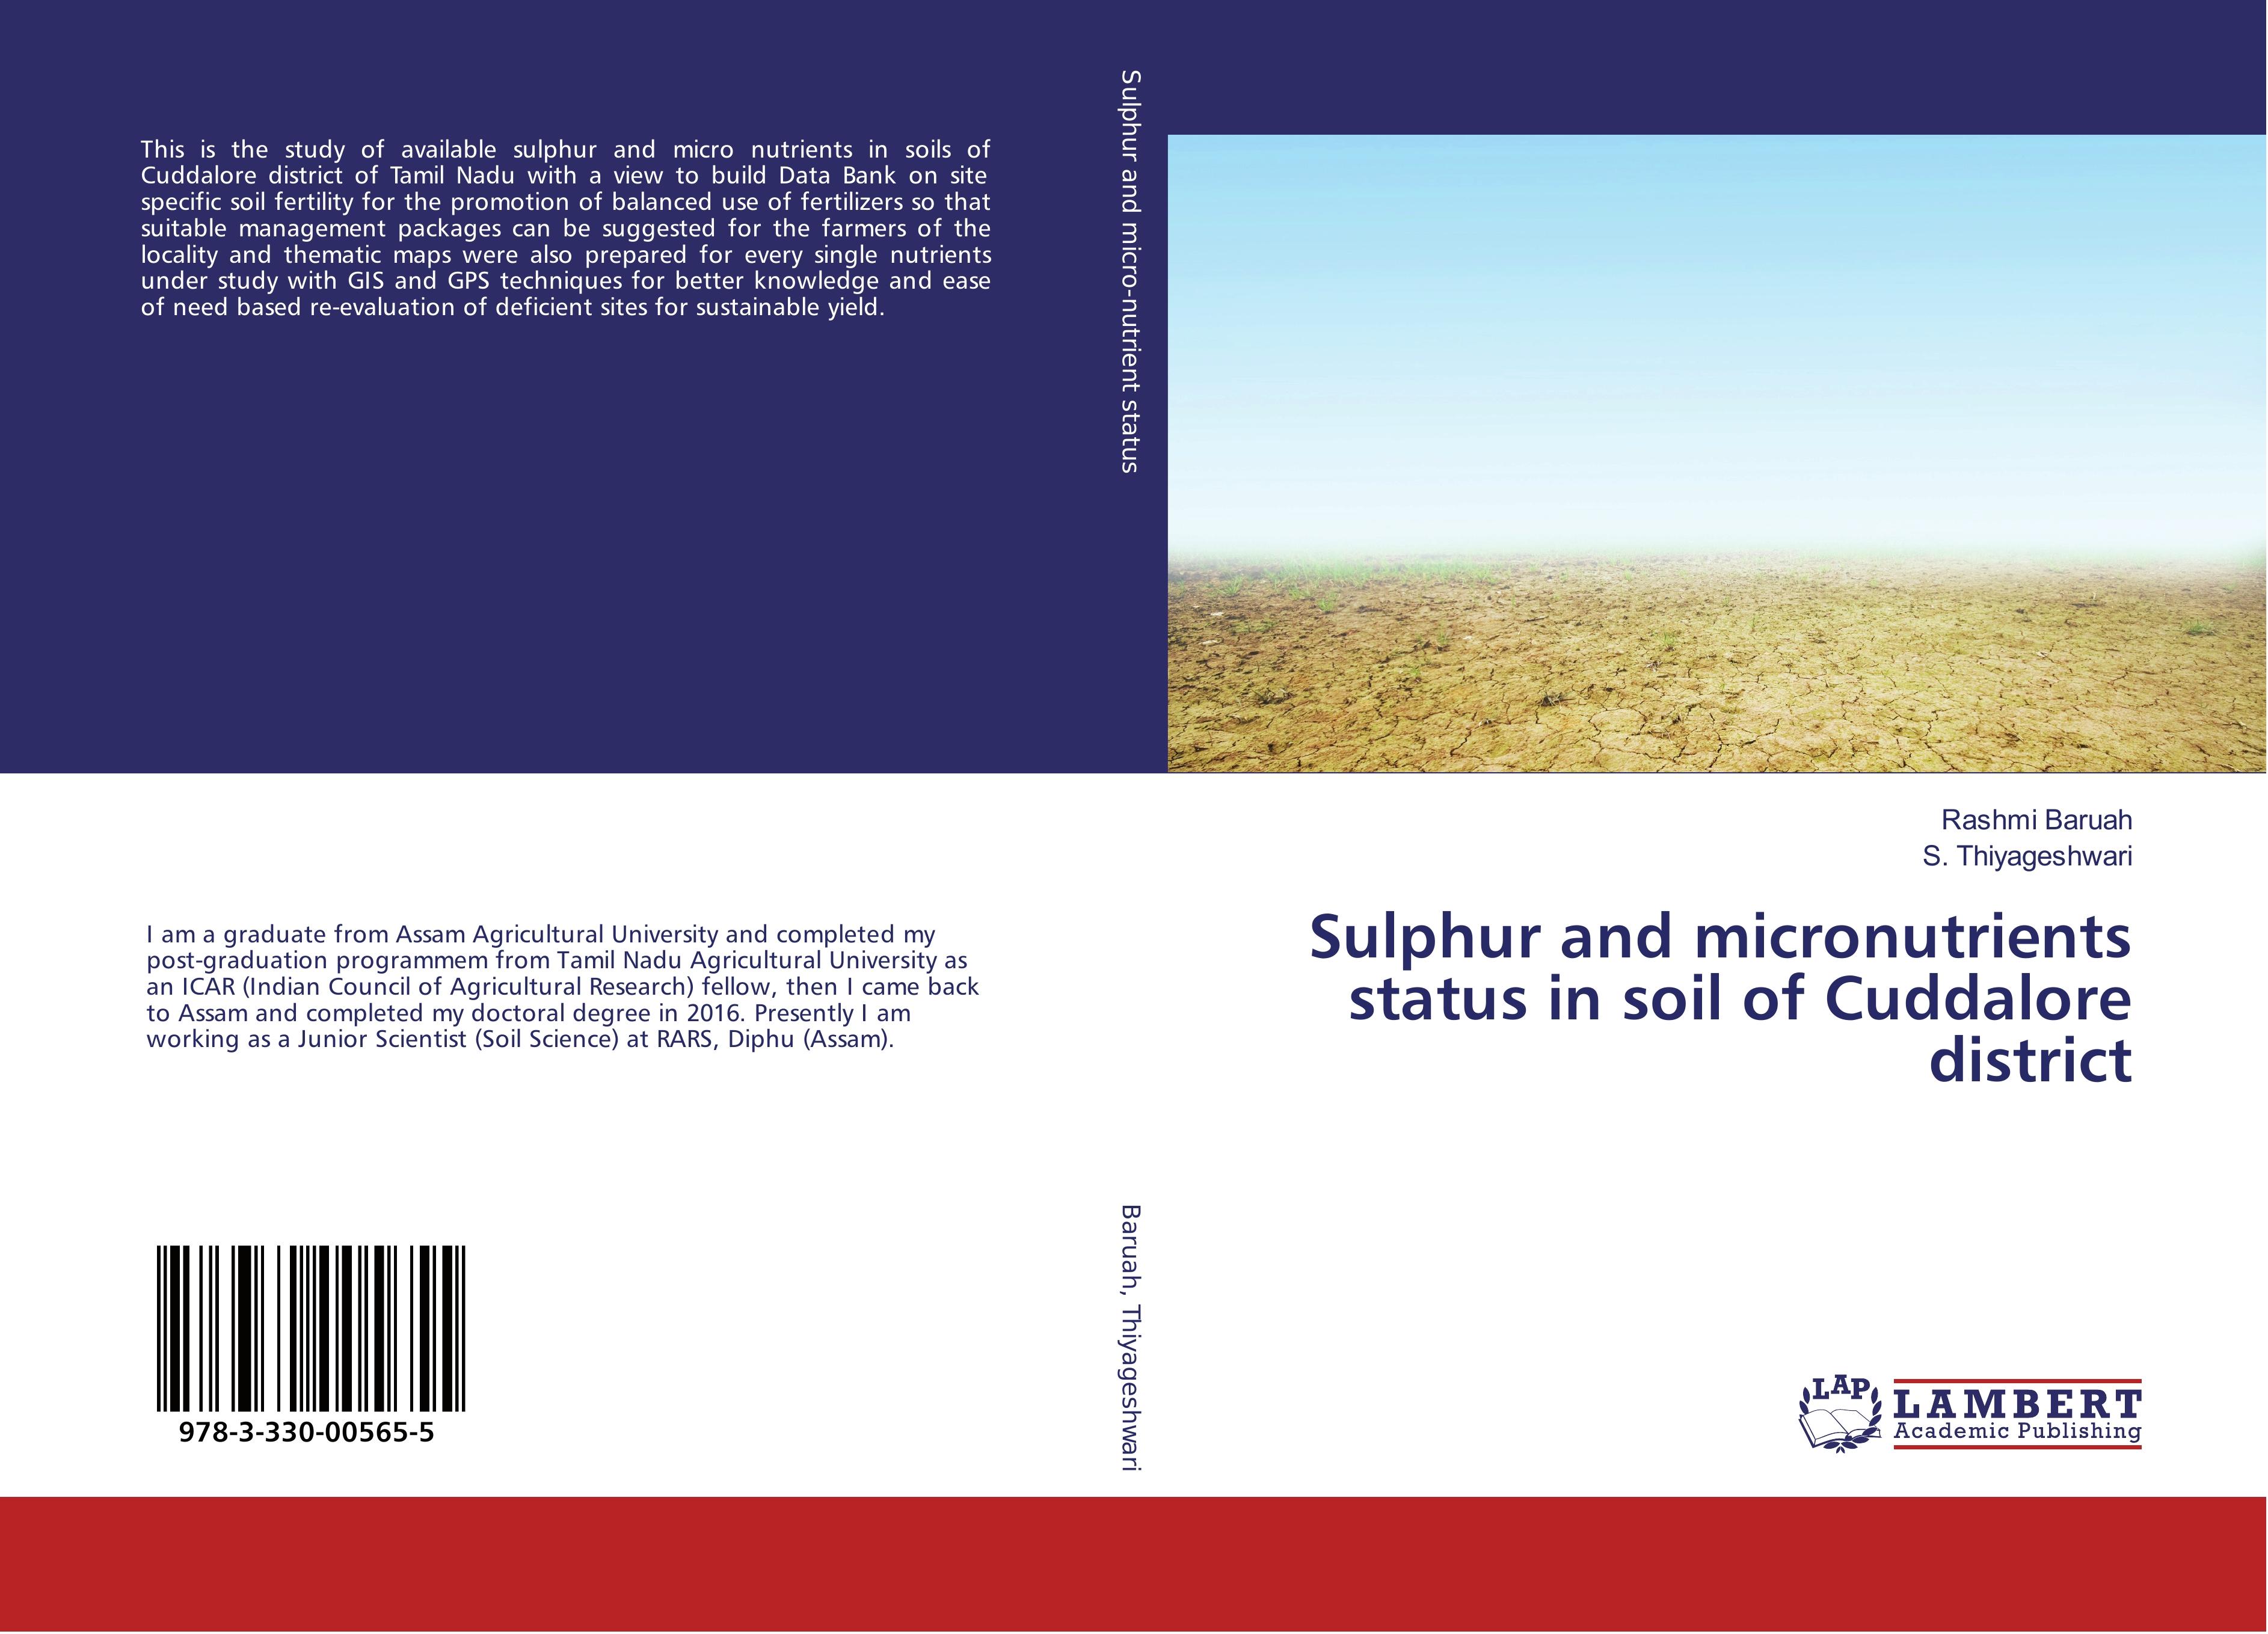 Sulphur and micronutrients status in soil of Cuddalore district - Rashmi Baruah S. Thiyageshwari